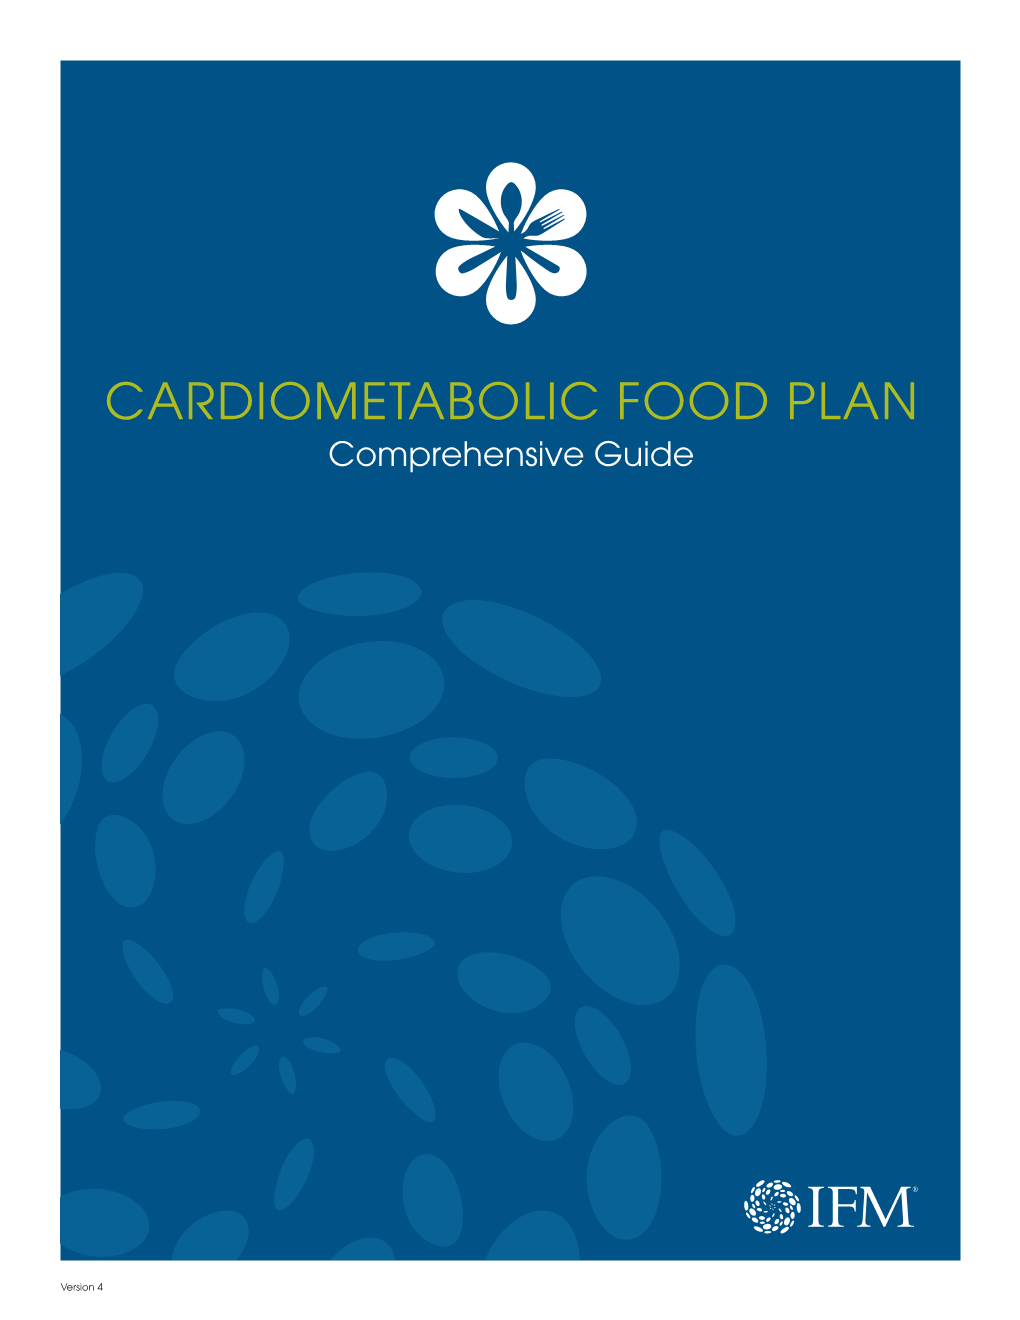 15IFM07 Cardiometabolic Food Plan Comprehensive Guide Final V4.Indd